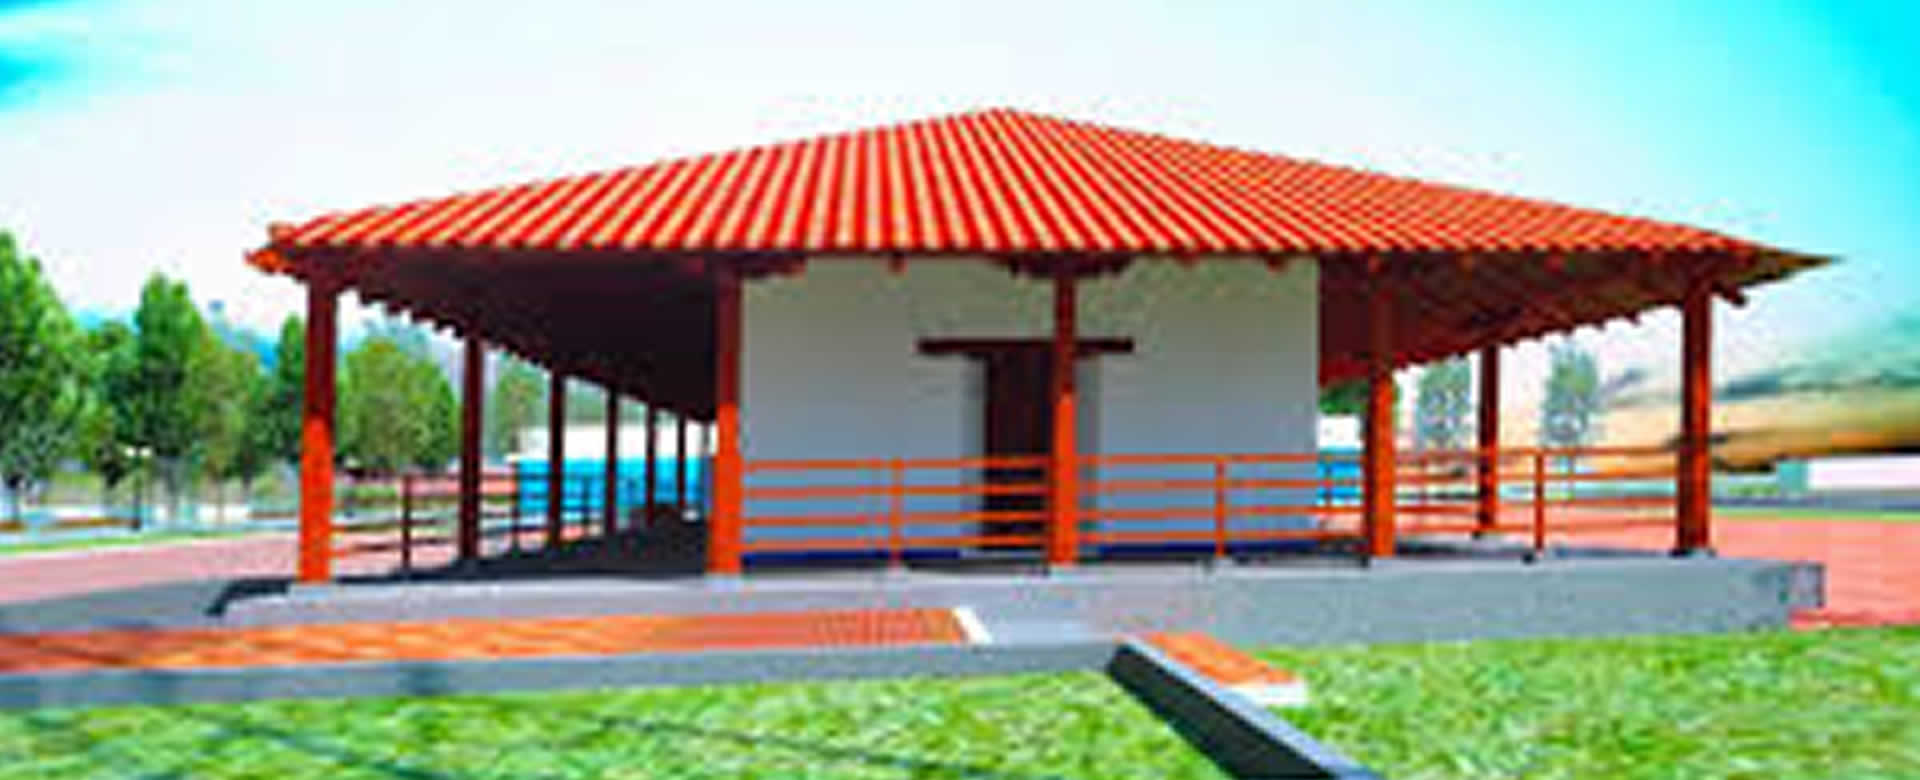 Inaugurarán casa replica de la Hacienda San Jacinto